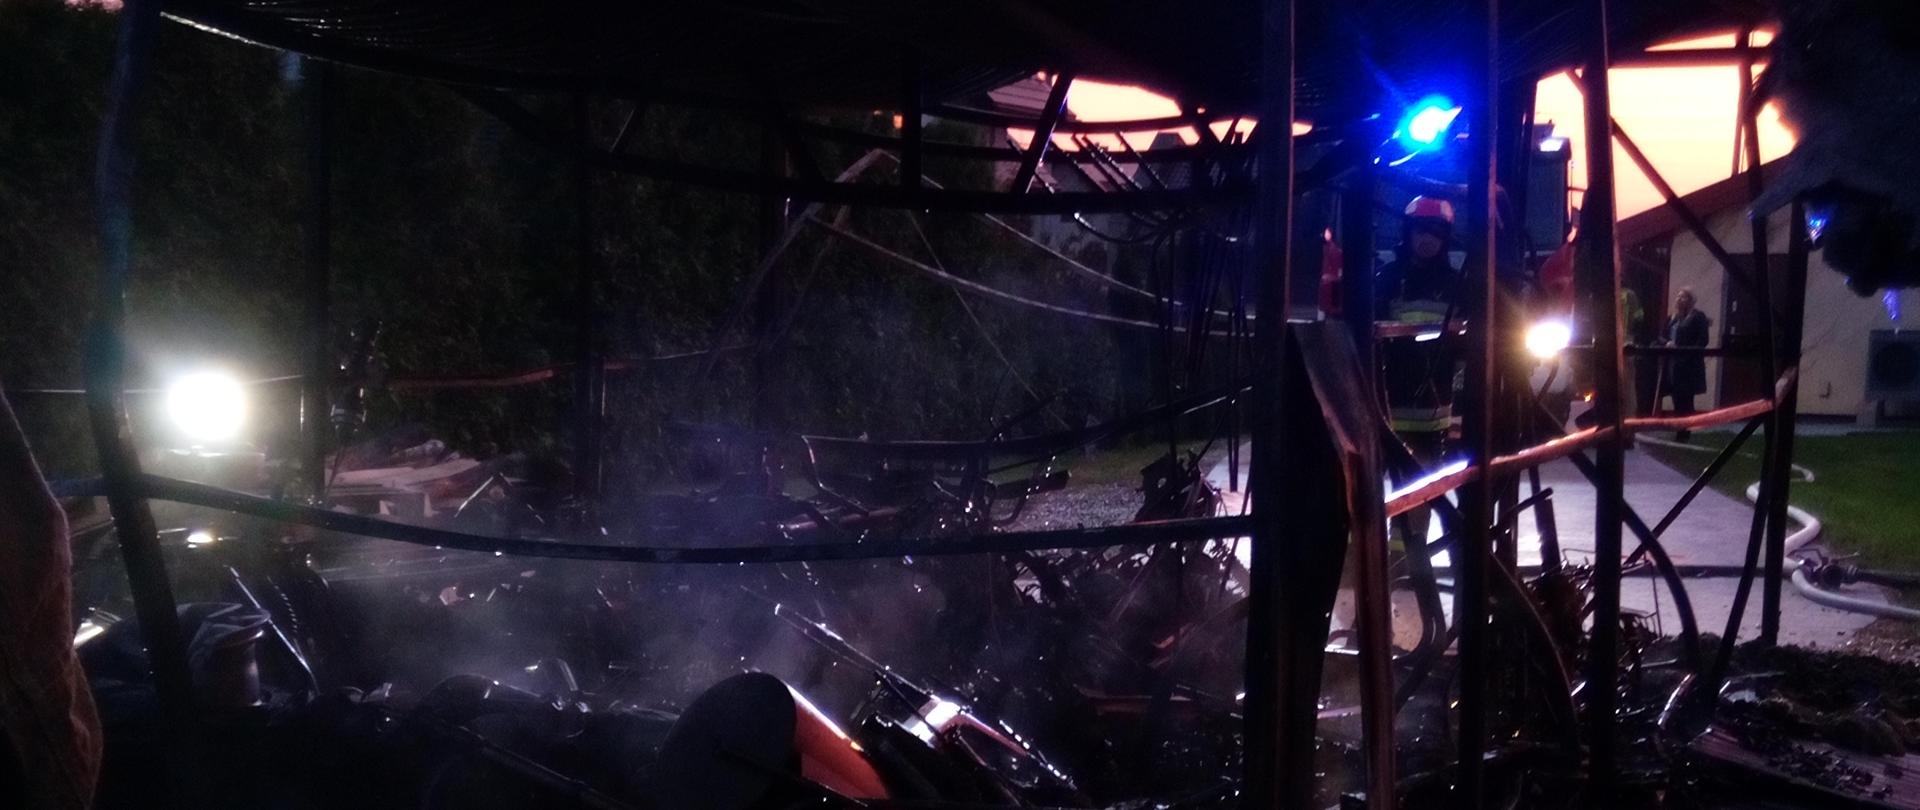 Zdjęcie przedstawia doszczętnie spalony garaż wolnostojący. Został sam "Szkielet" Na zewnątrz panuje półmrok. W oddali widać niebieską poświatę od sygnałów alarmowych samochodu PSP.